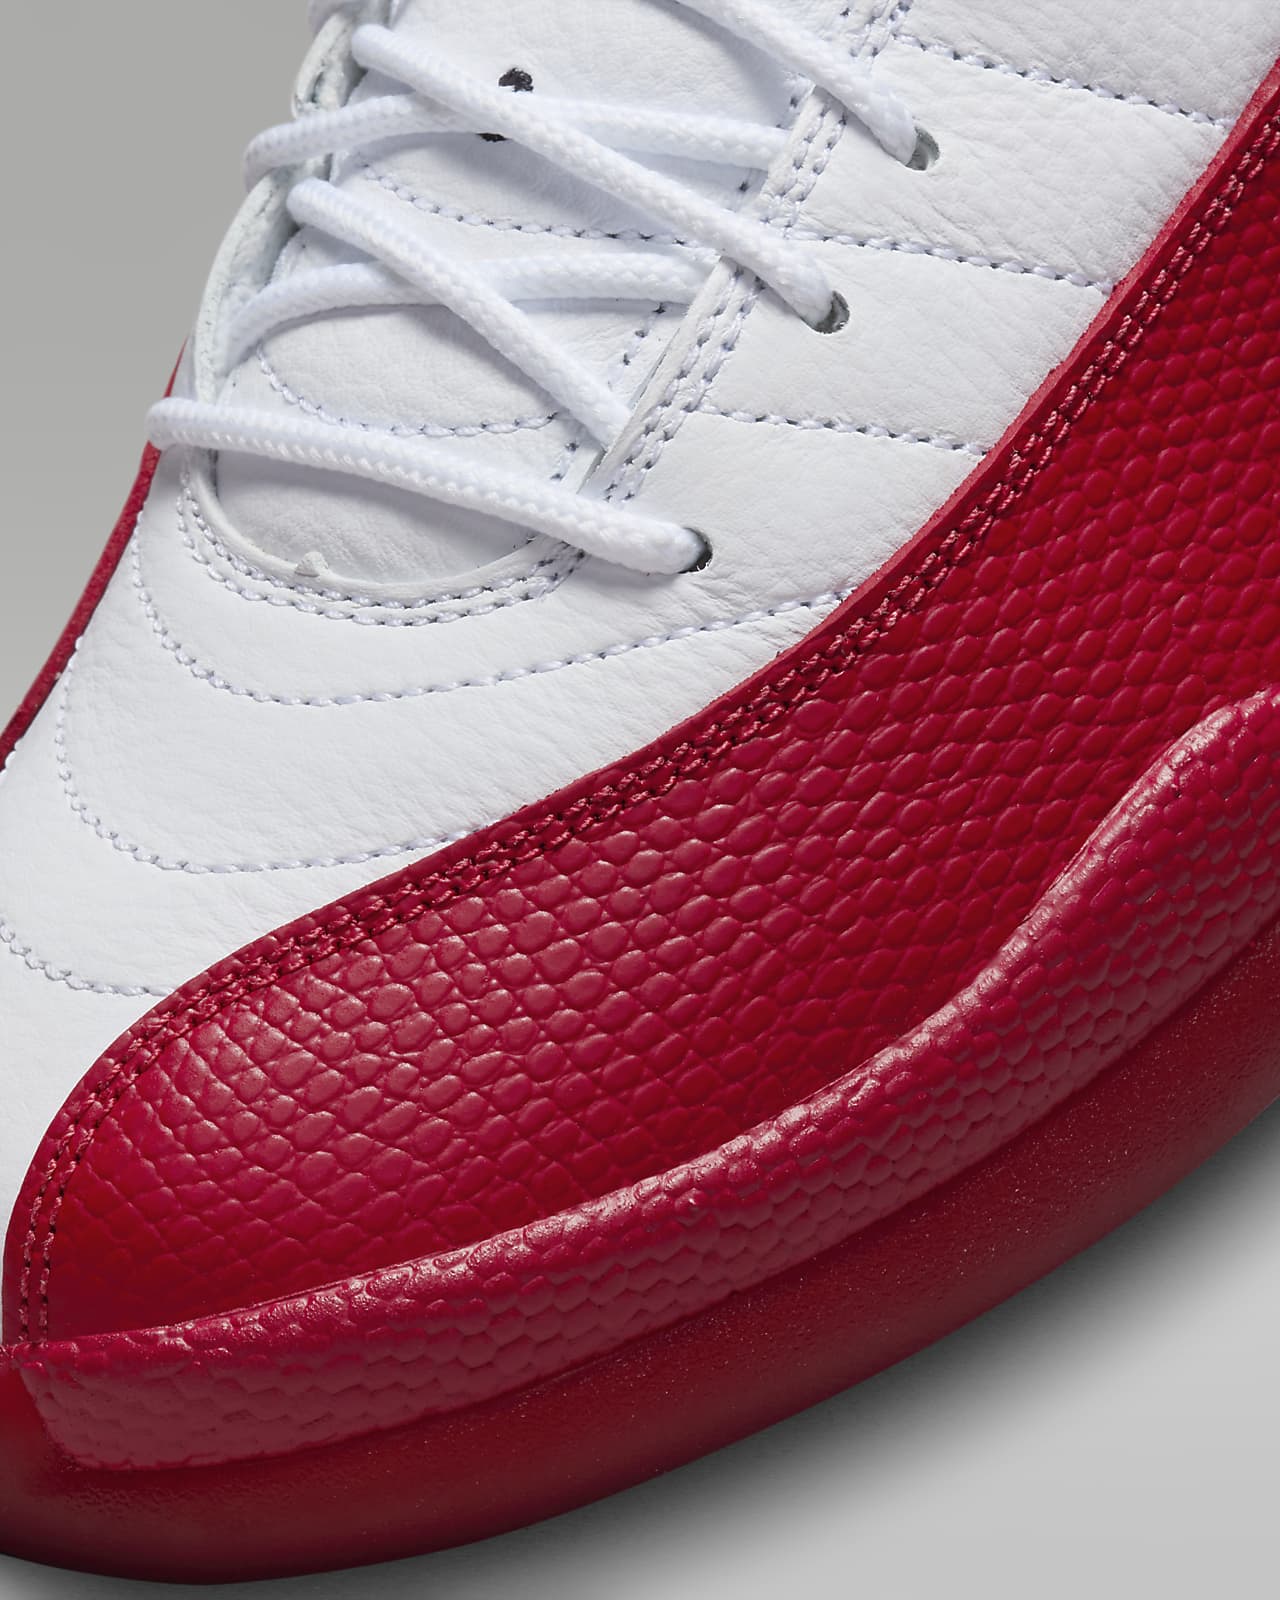 Air Jordan 12 'Cherry' Men's Shoes. Nike LU